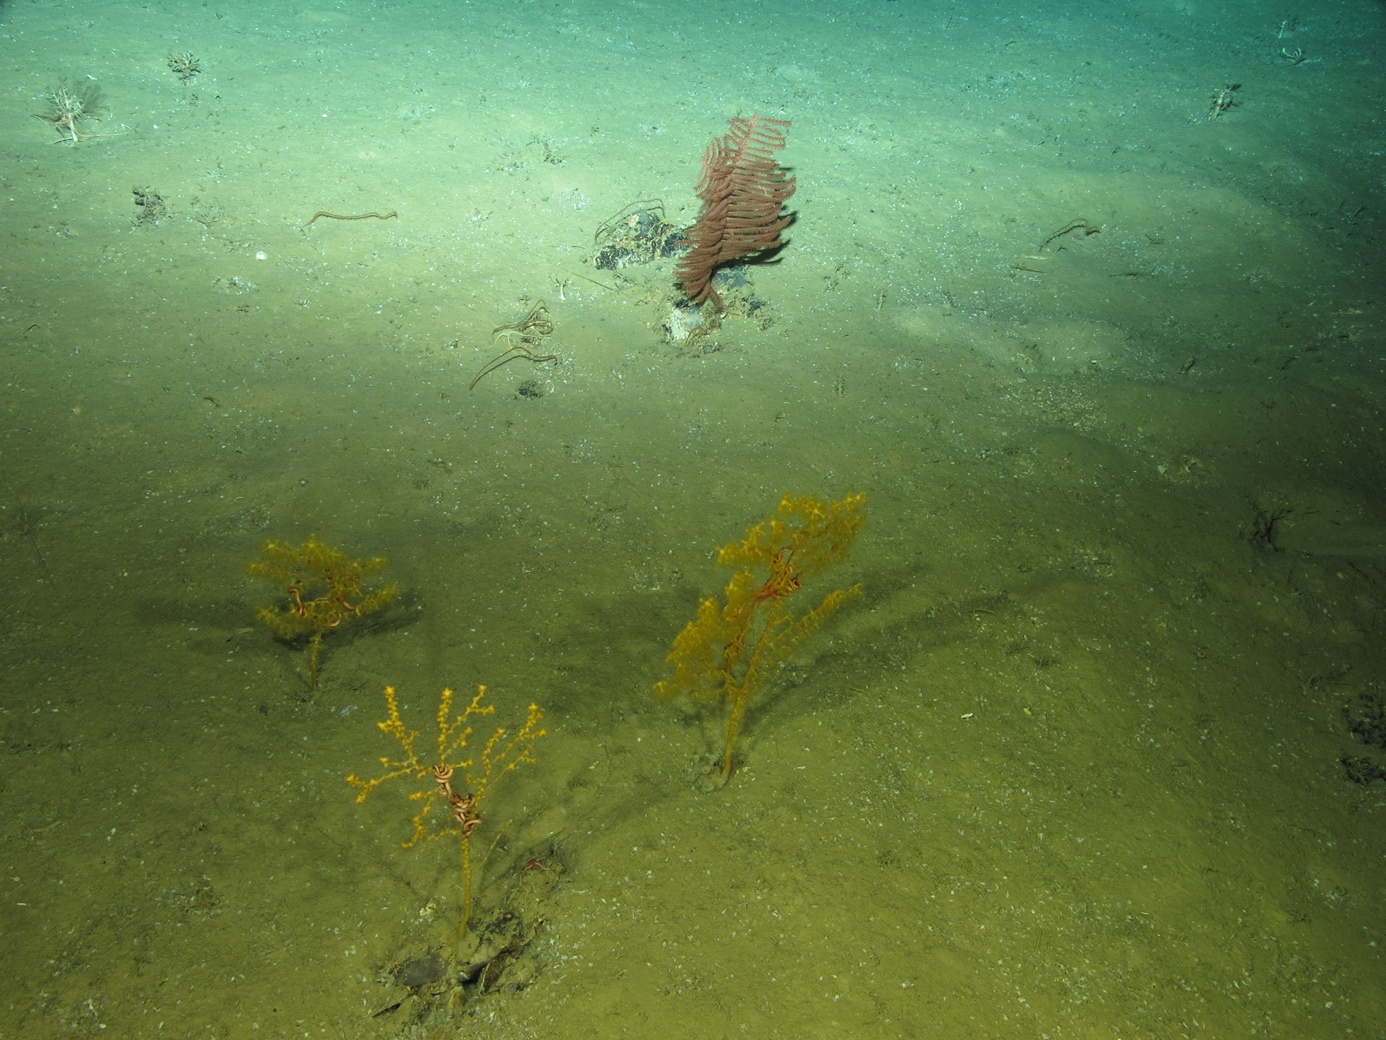 Gorgonias y corales negros a 1.960 metros de profundidad en el océano Atlántico filmados durante la campaña internacional Medwaves liderada por el IEO. © Medwaves/IEO/ATLAS Project